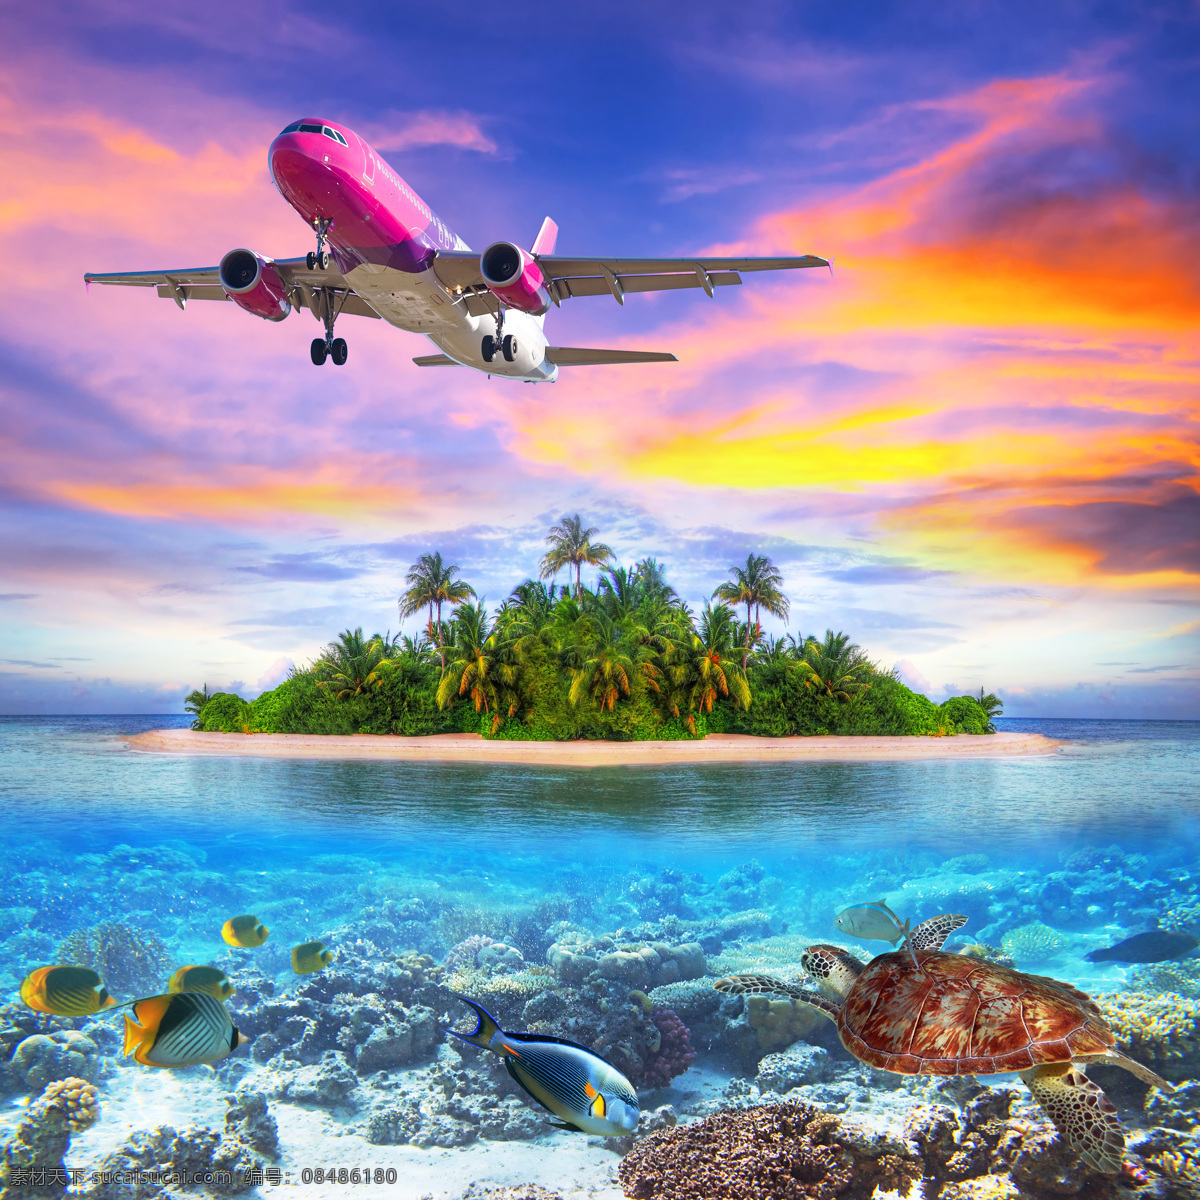 飞机 下 海洋 天空 珊瑚 椰子树 旅行 大海图片 风景图片